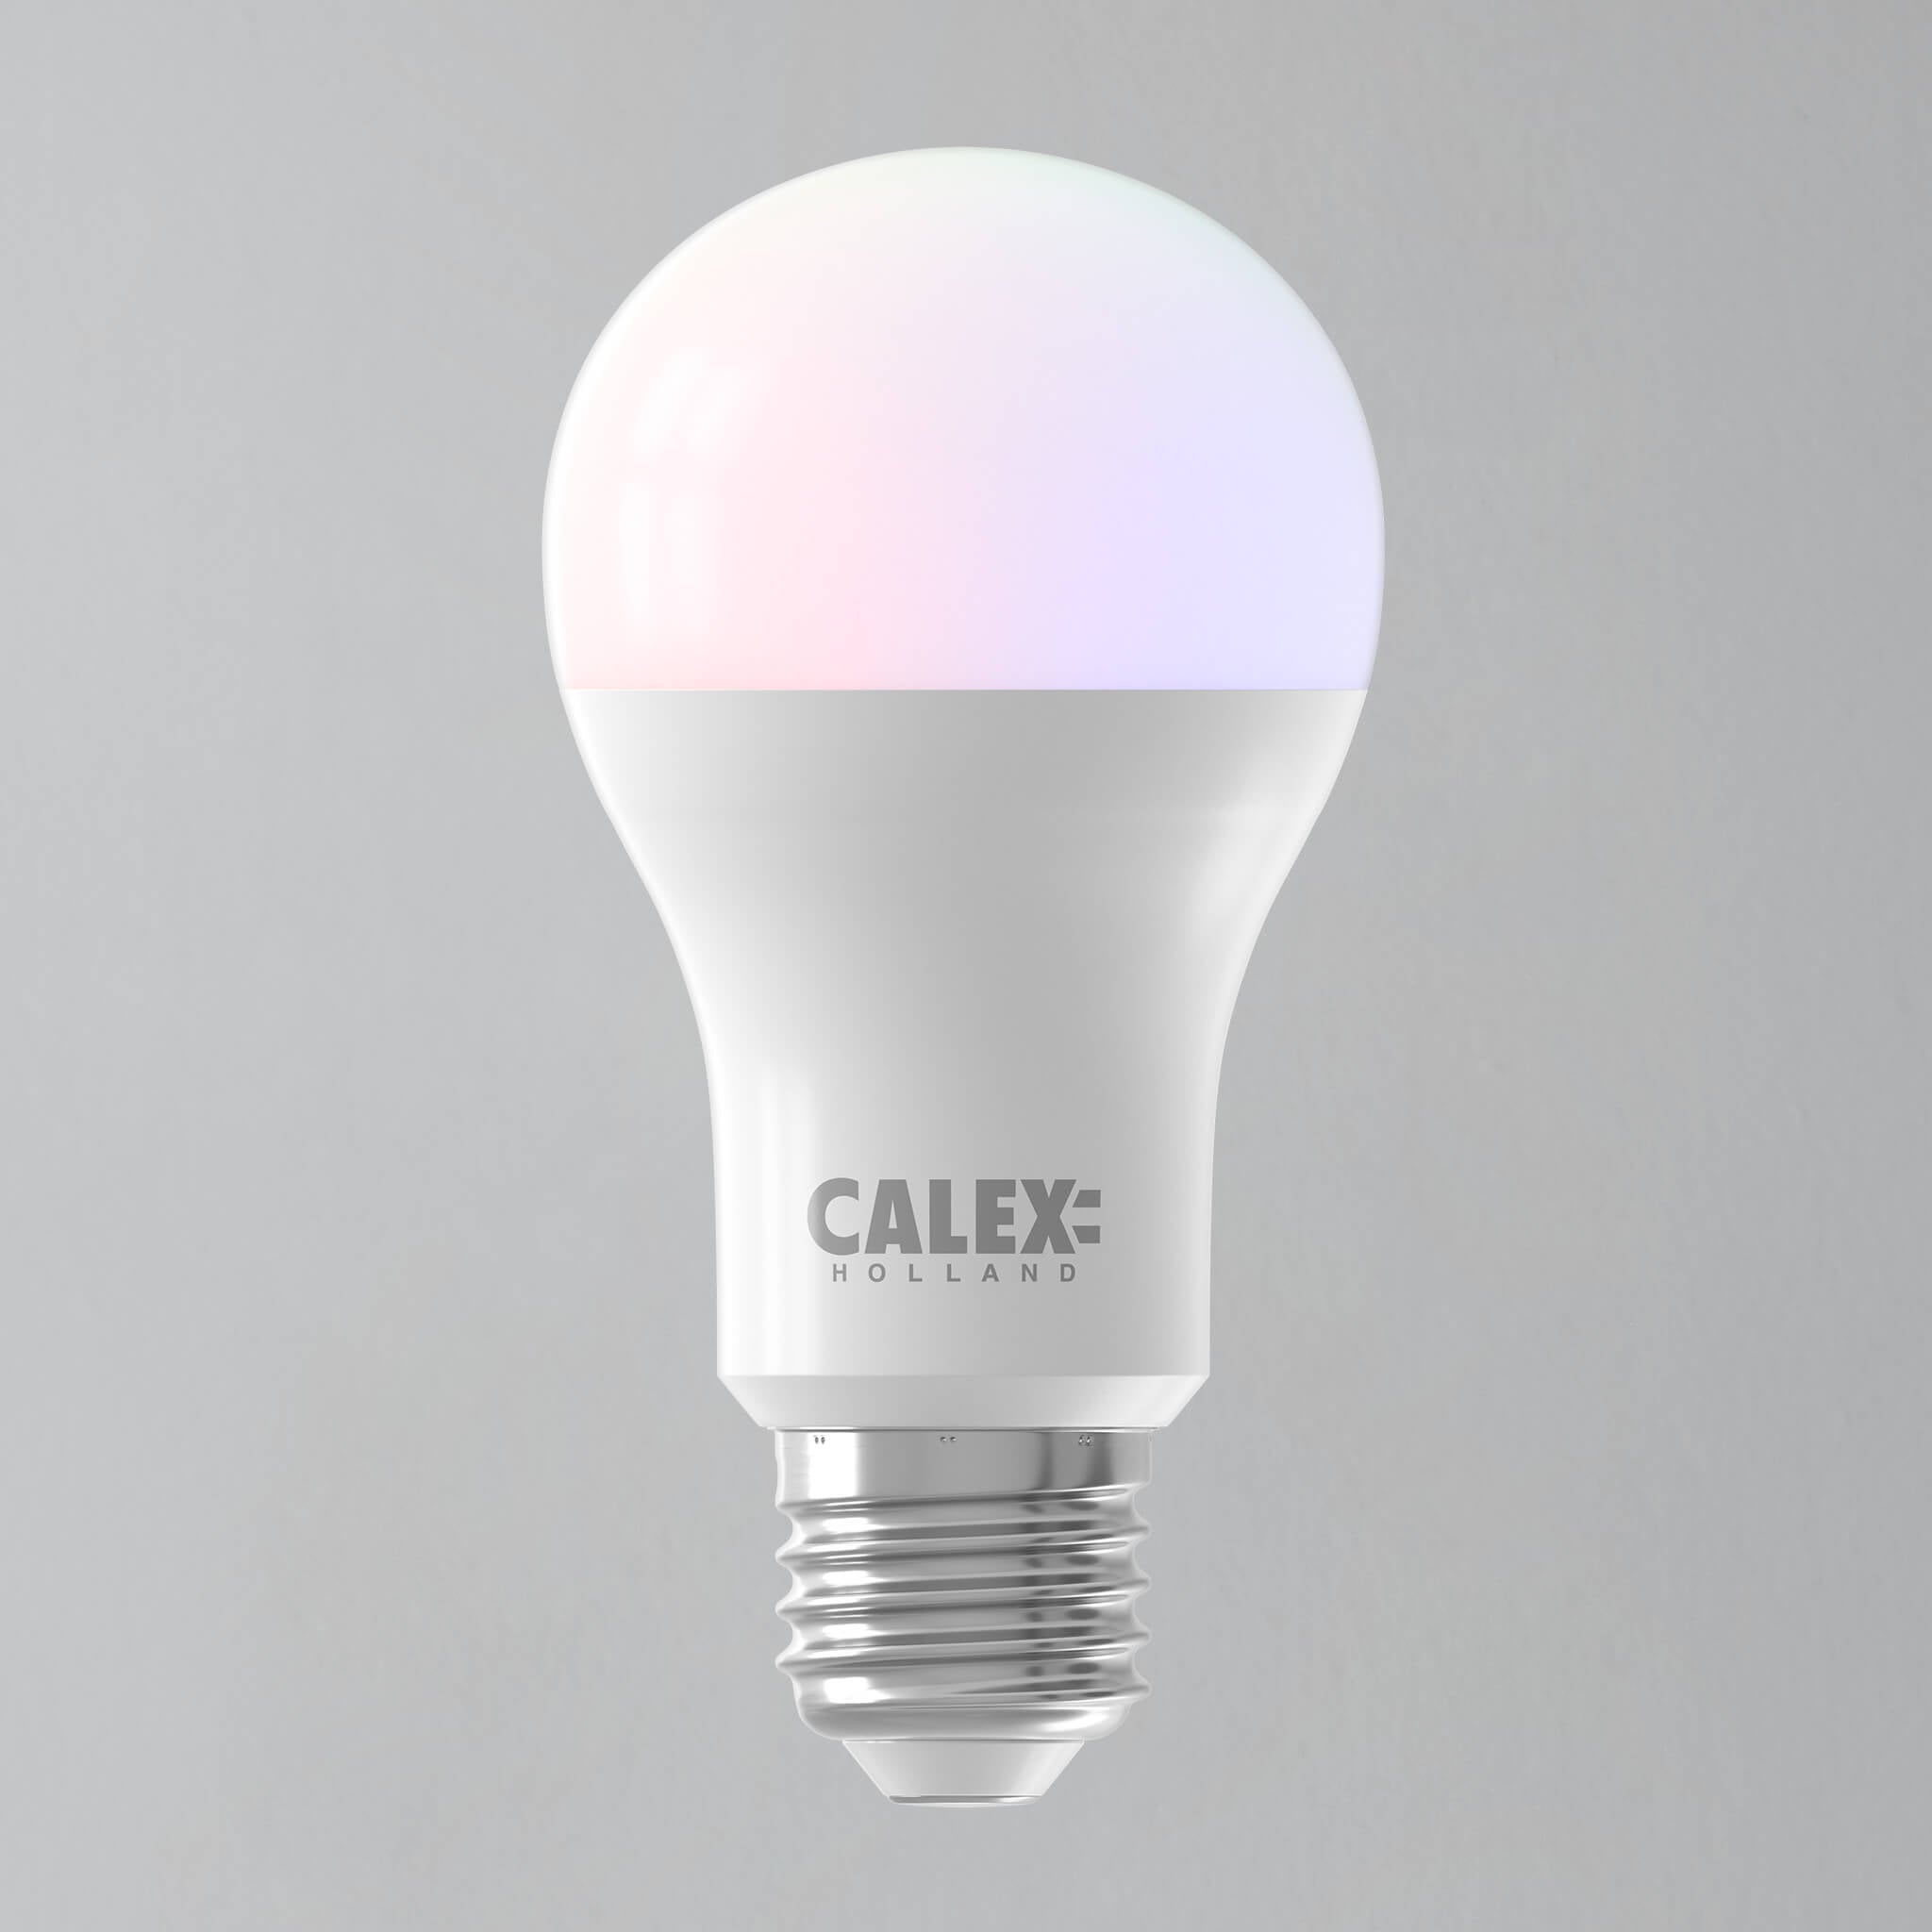 calex smart bulbs